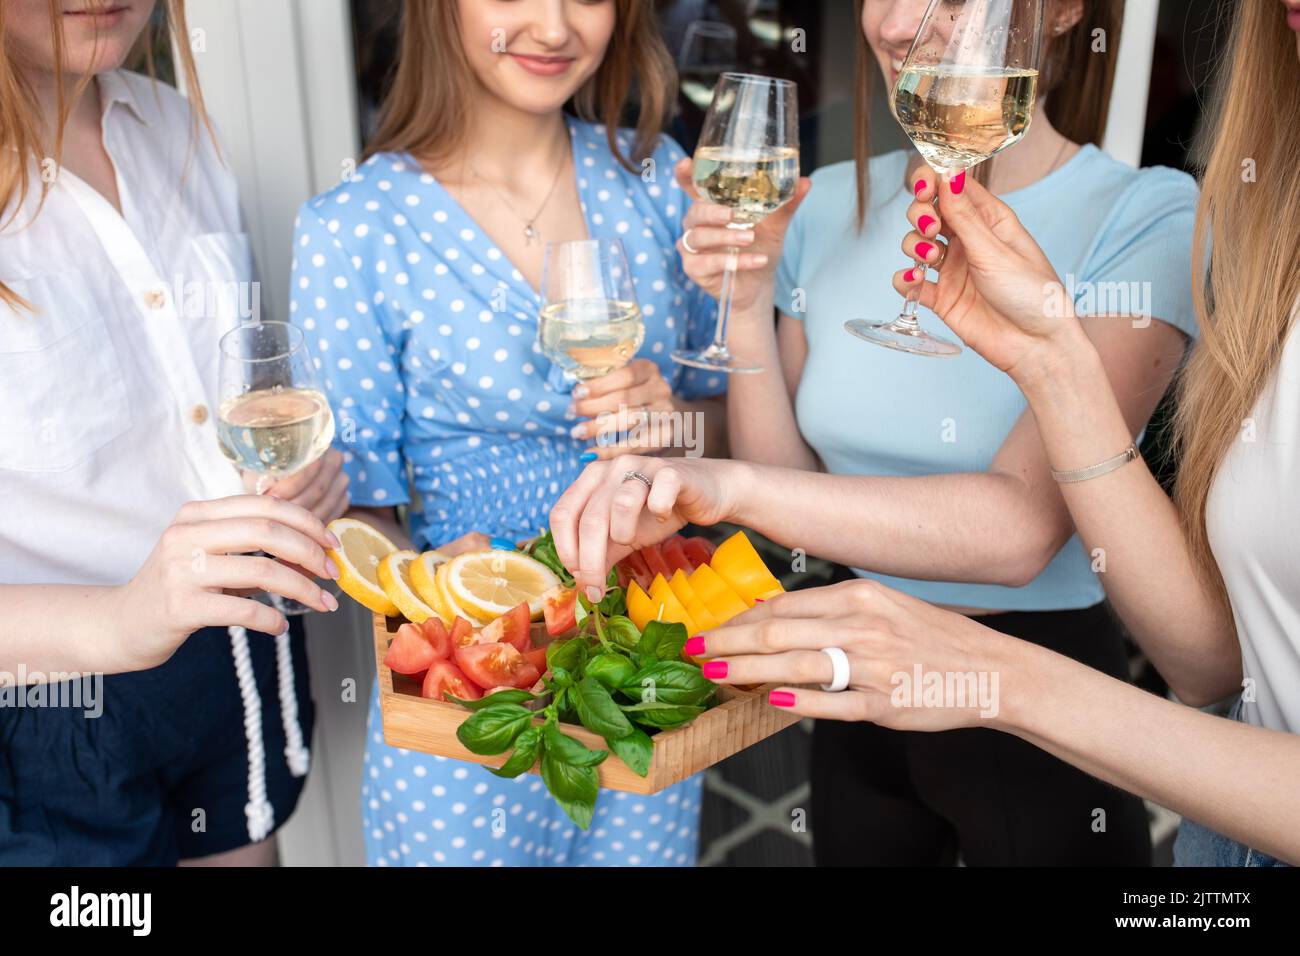 Beschnittenes Foto von jungen lächelnden atemberaubenden Frauen, die Gemüse halten, in der Nähe des Hauses klirrende Gläser Weißwein halten. Stockfoto